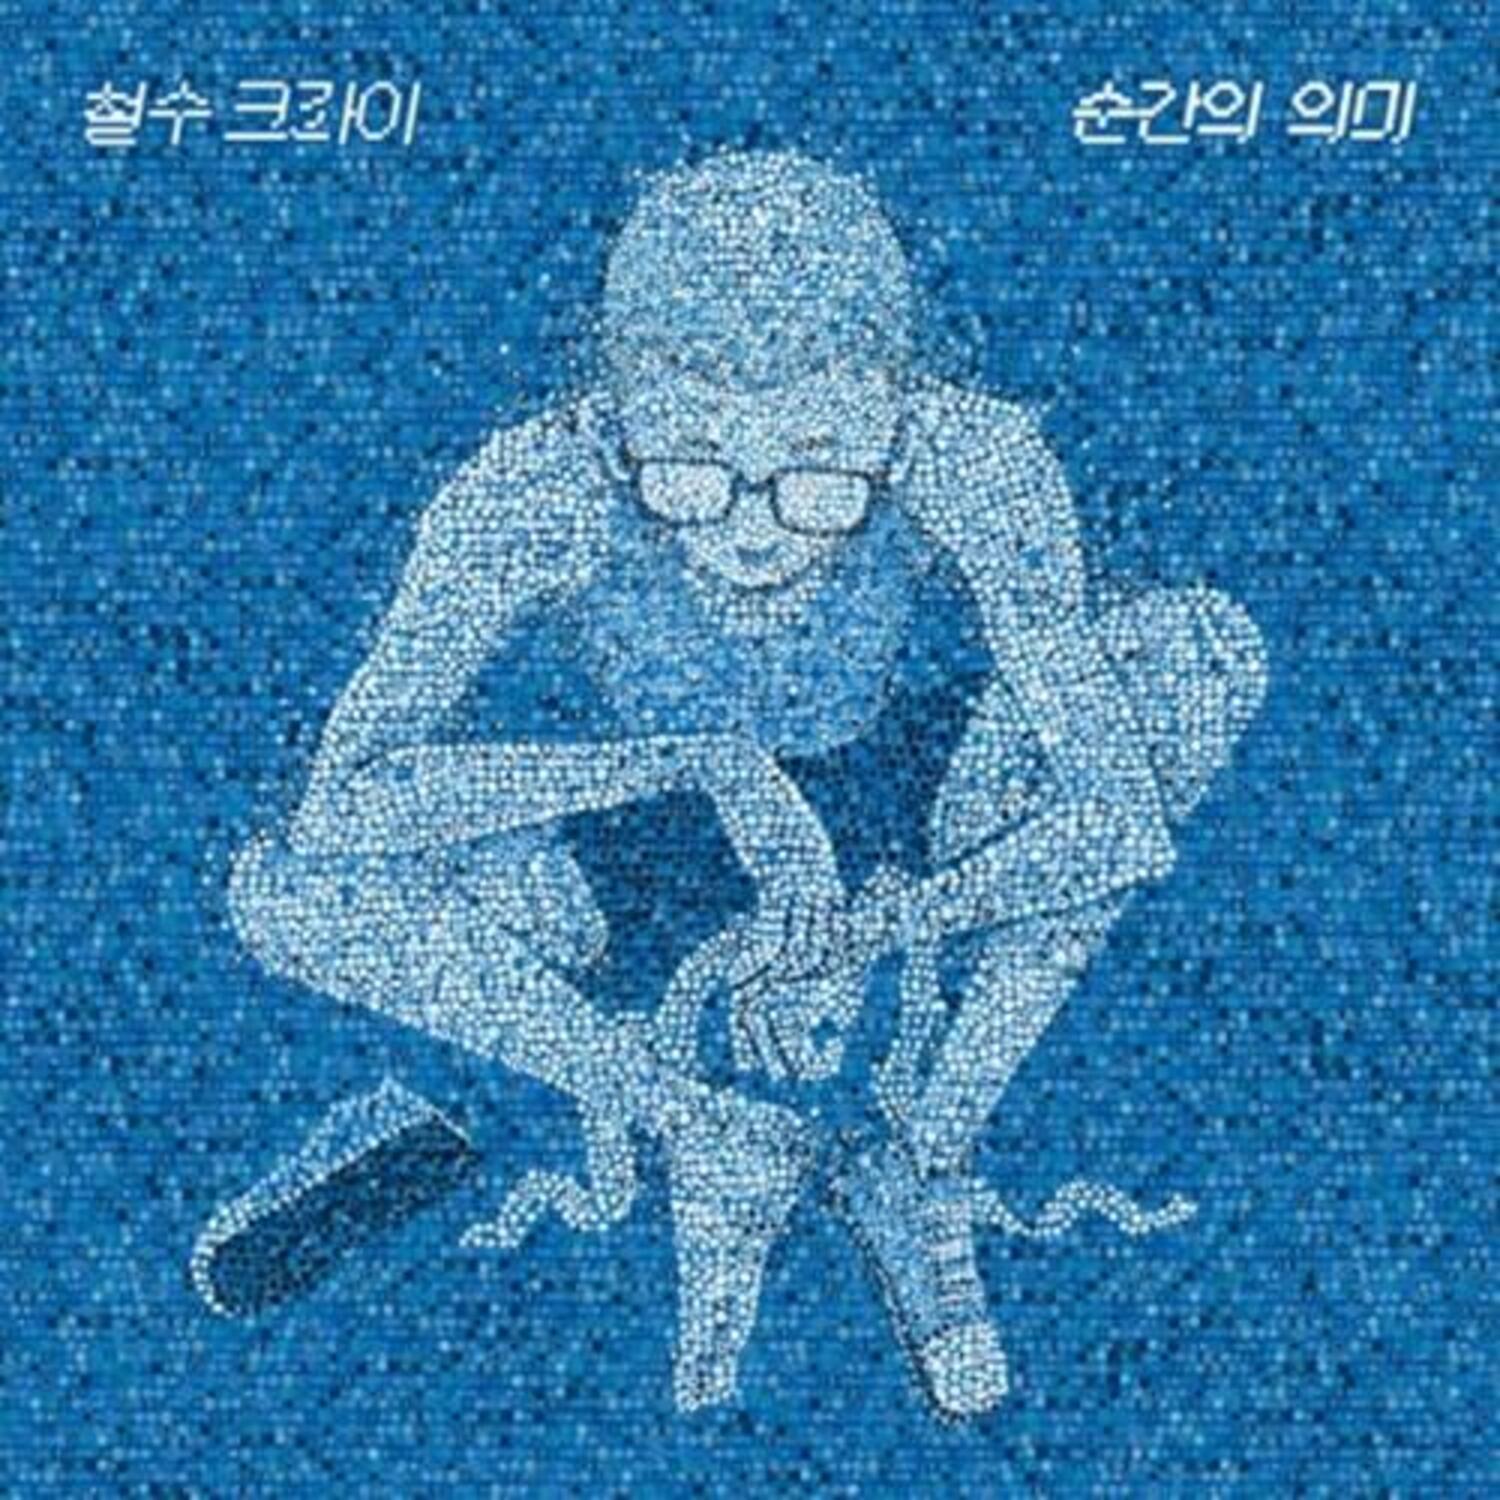 철수크라이(CHEOLSU CRY) - 2ND EP [순간의 의미]